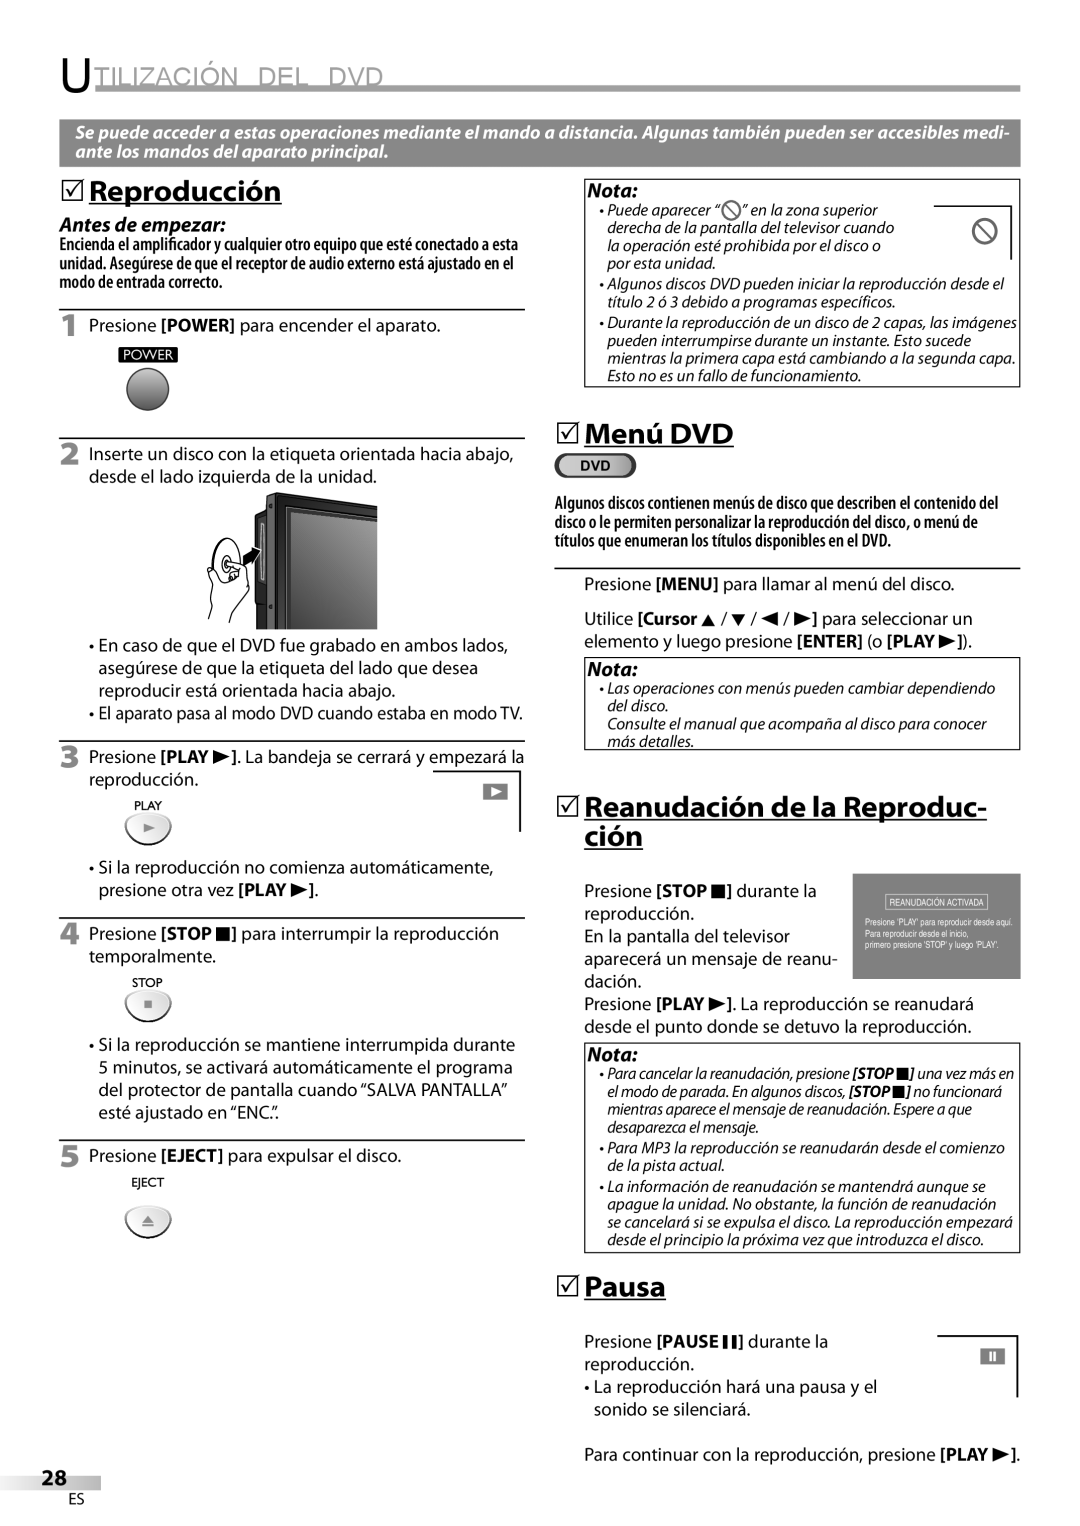 Sylvania LD200SL8 Reproducción, 5Menú DVD, 5Reanudación de la Reproduc- ción, Pausa, Utilización Del Dvd, Antes de empezar 